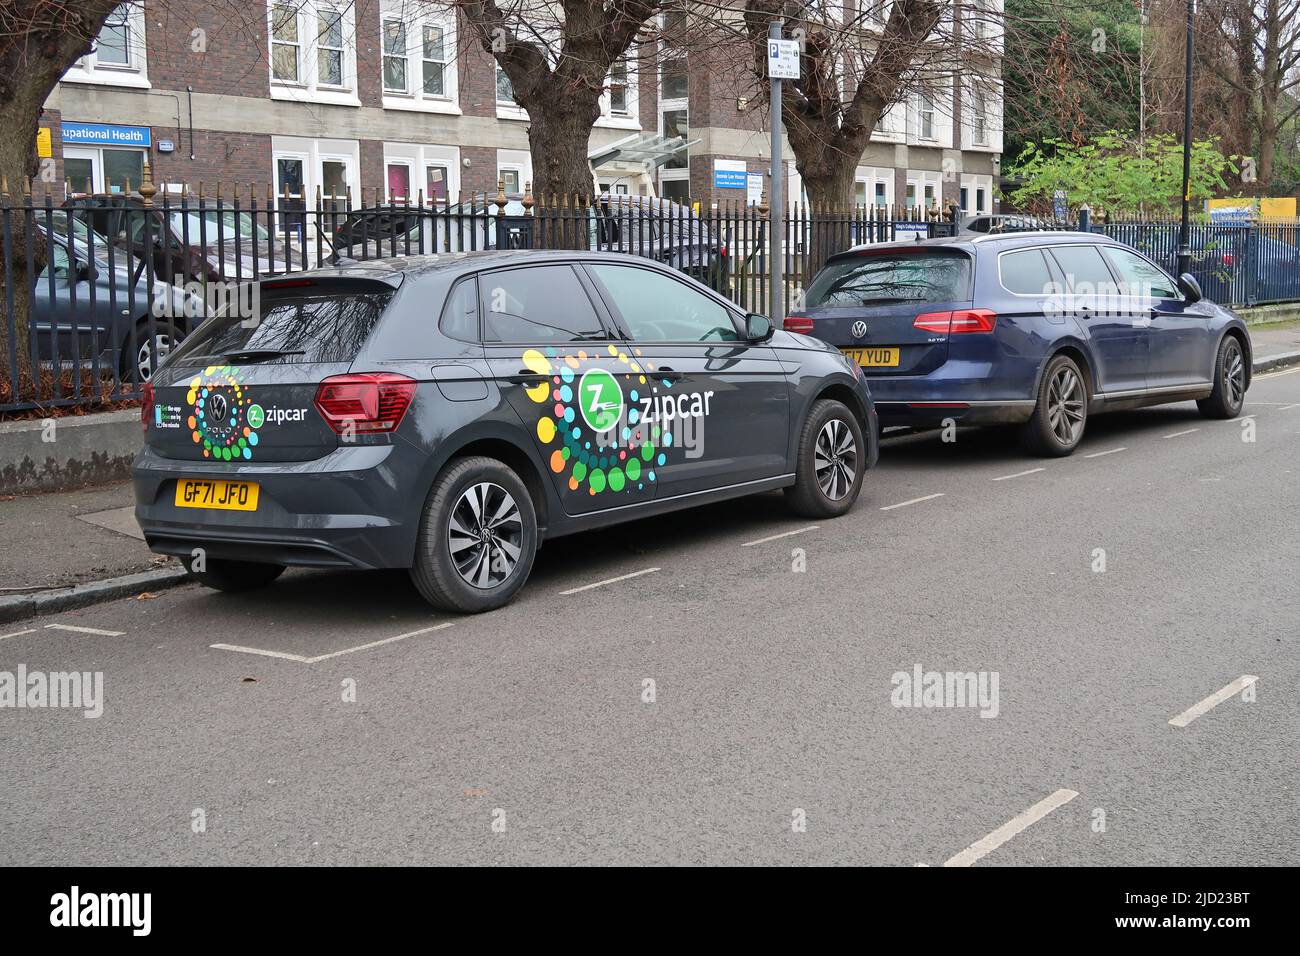 Londra, Regno Unito. Una Volkswagen Polo elettrica dall'auto-club Zipcar è parcheggiata su una strada residenziale a Camberwell. Foto Stock